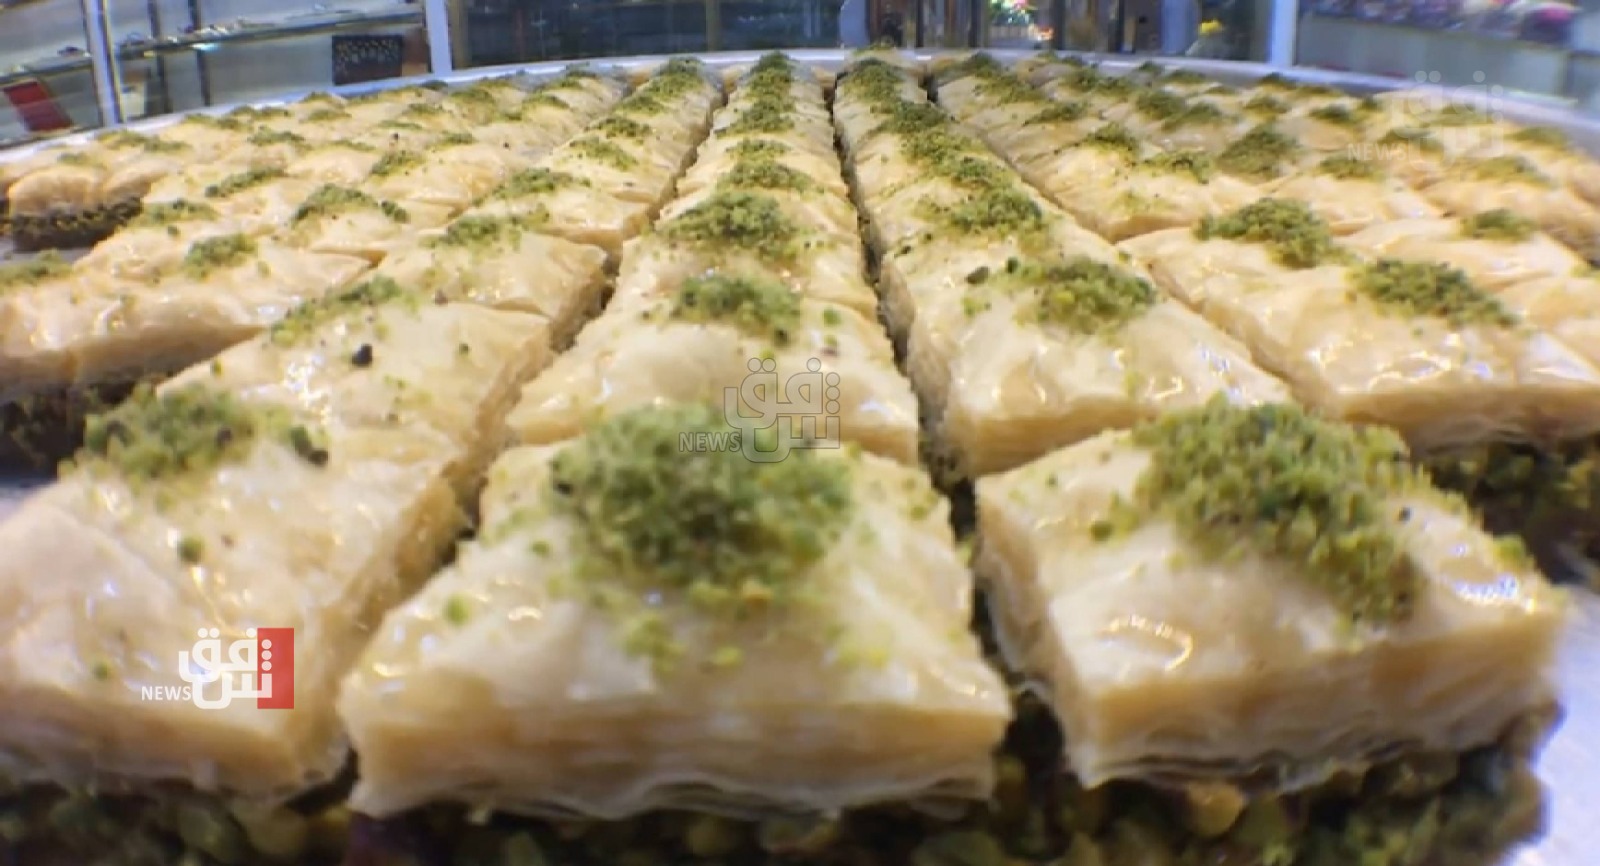   (صور) حلويات رمضان .. ضيف "ينعش" المائدة ومحال البيع في السليمانية